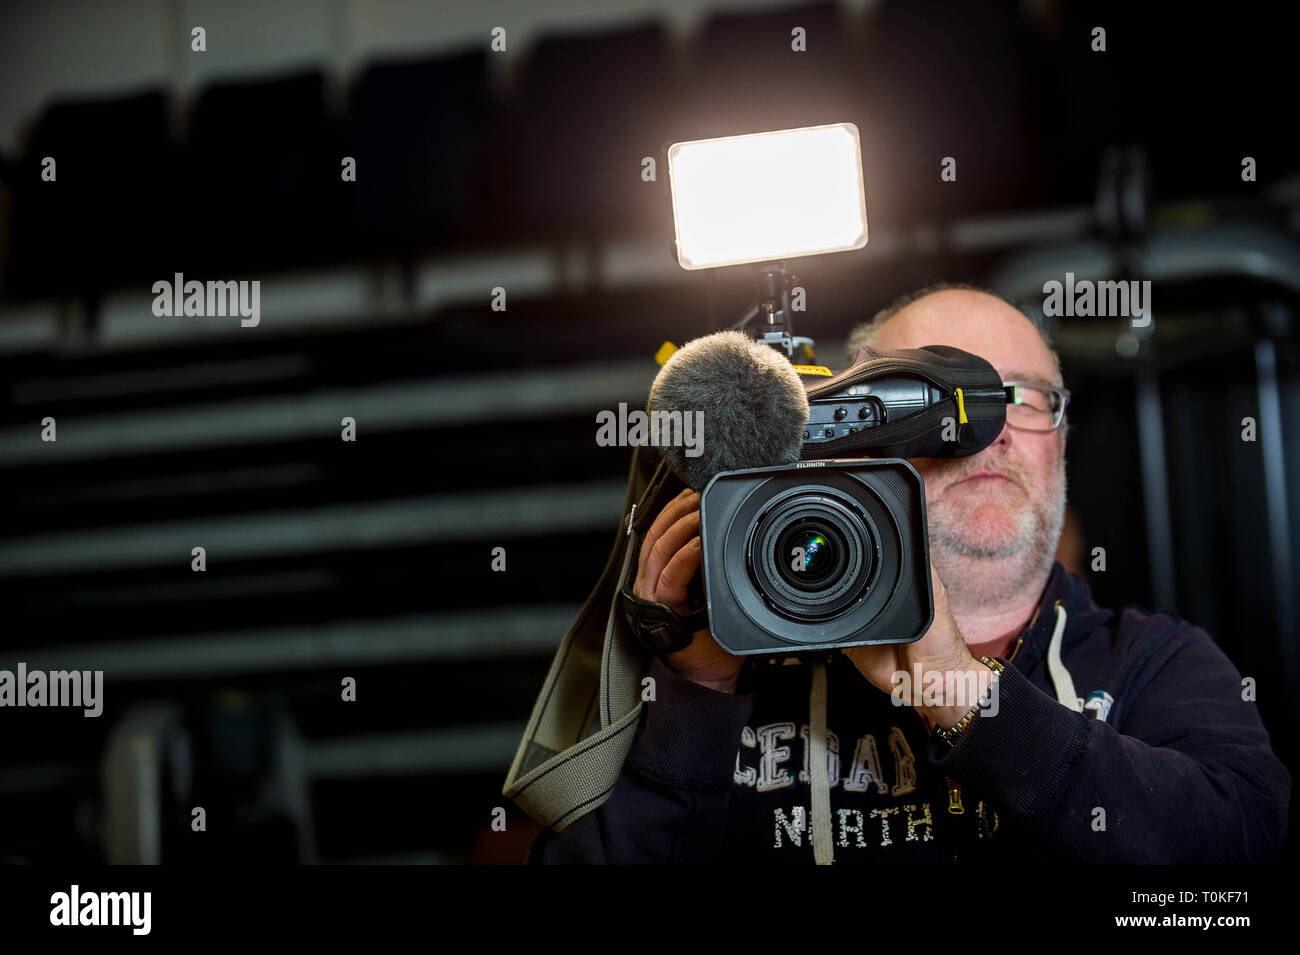 TV News cameraman Stock Photo